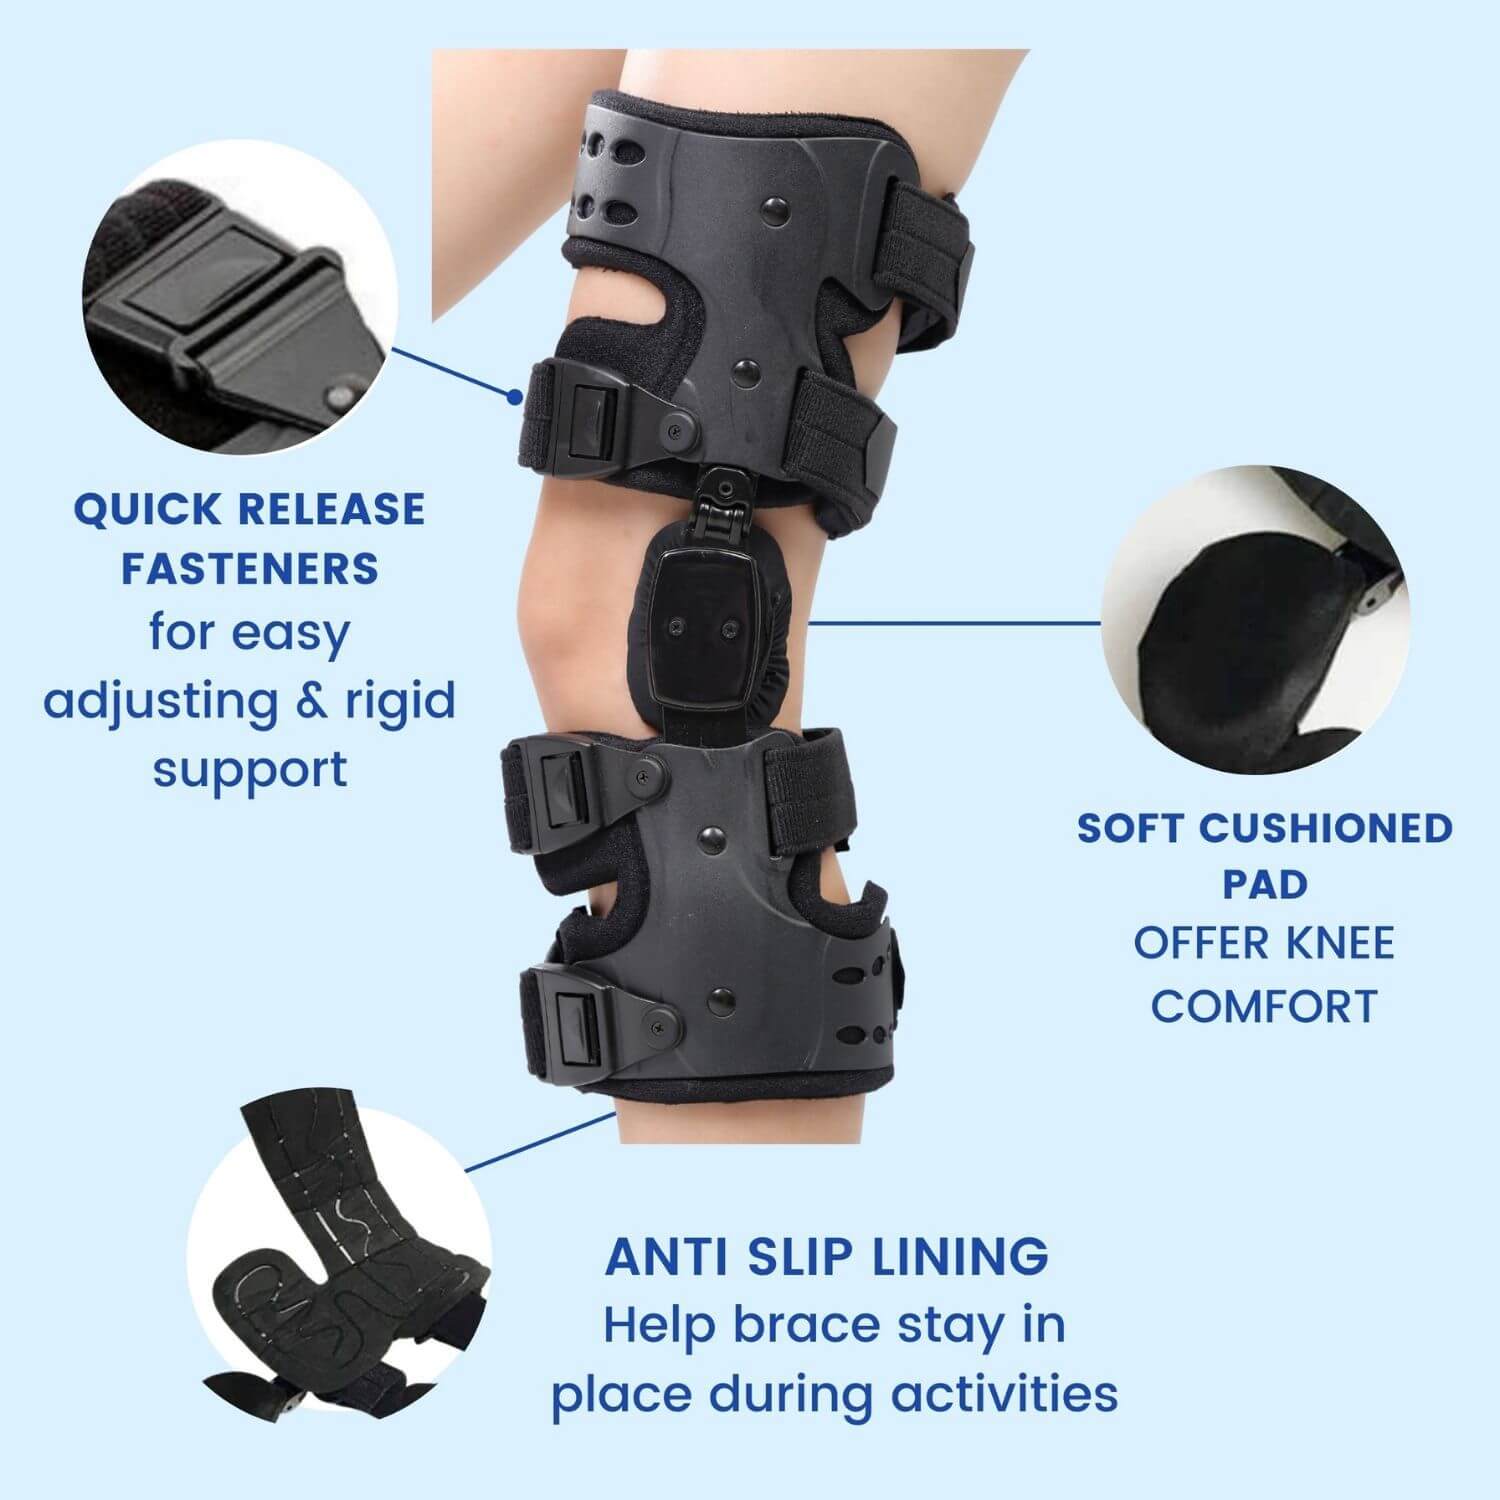 OA Unloader Knee Brace Support Medial or lateral Support – Comfyorthopedic